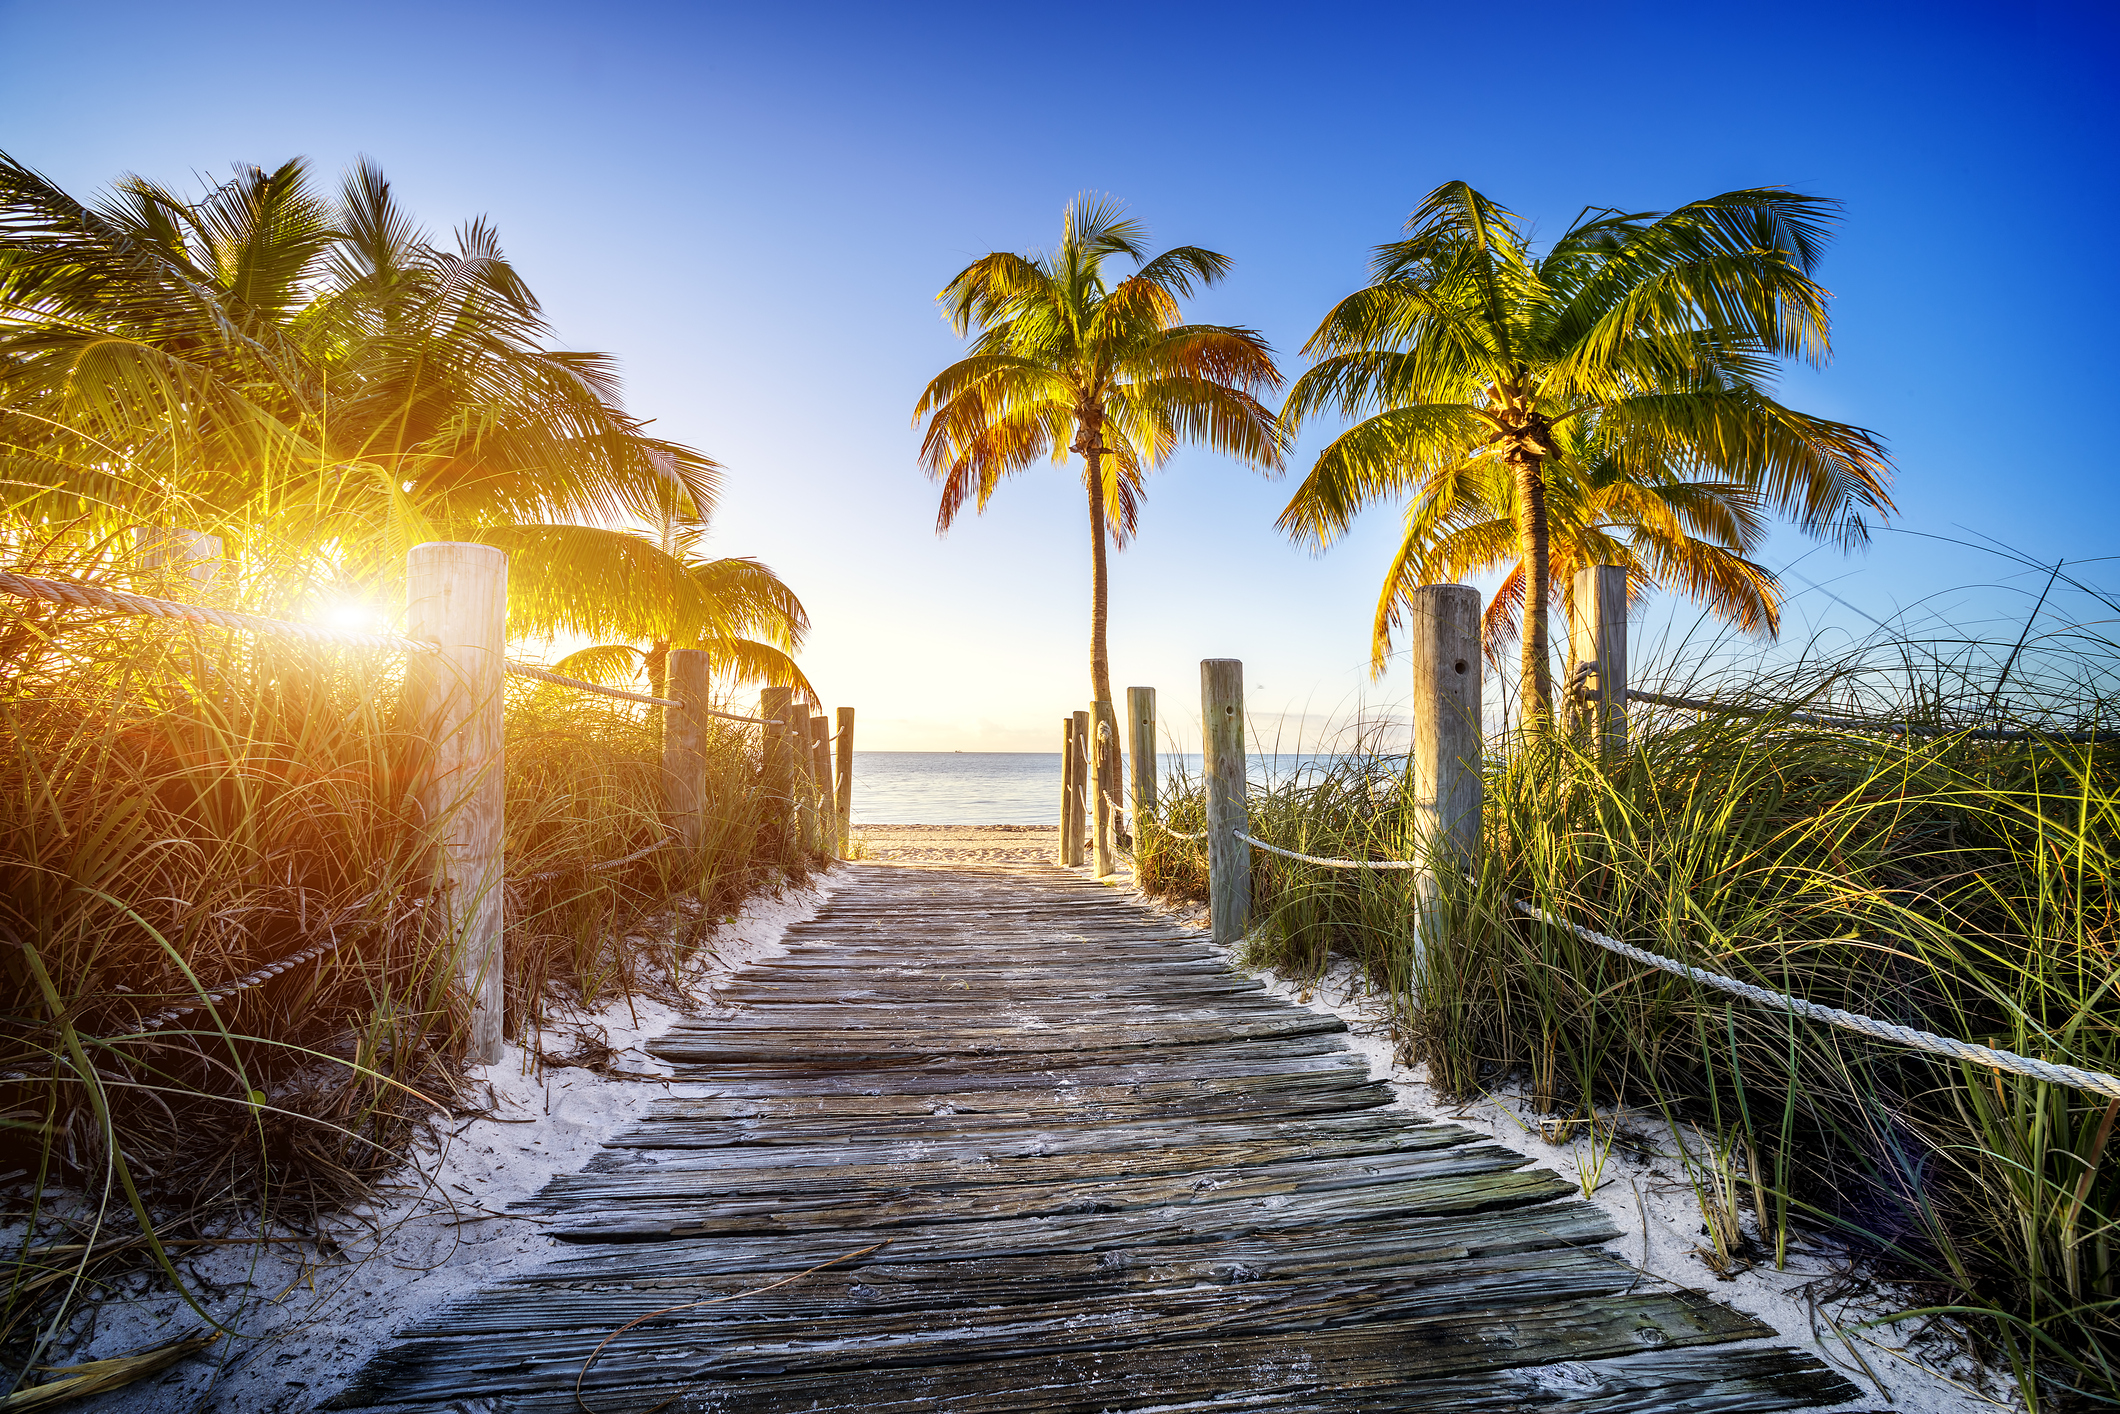 Слънце, море, плаж, запомнящ се нощен живот с много купони и партита, добра инфраструктура и чудесно място за сбъдване на мечти. Не е ли това раят на Земята? Местенцето е Маями - град, намиращ се в югоизточната част на САЩ, в щата Флорида, а мащабите му са големи - той е вторият по големина град във Флорида и най-голям град в окръг Маями-Дейд с население над 404 048 жители.